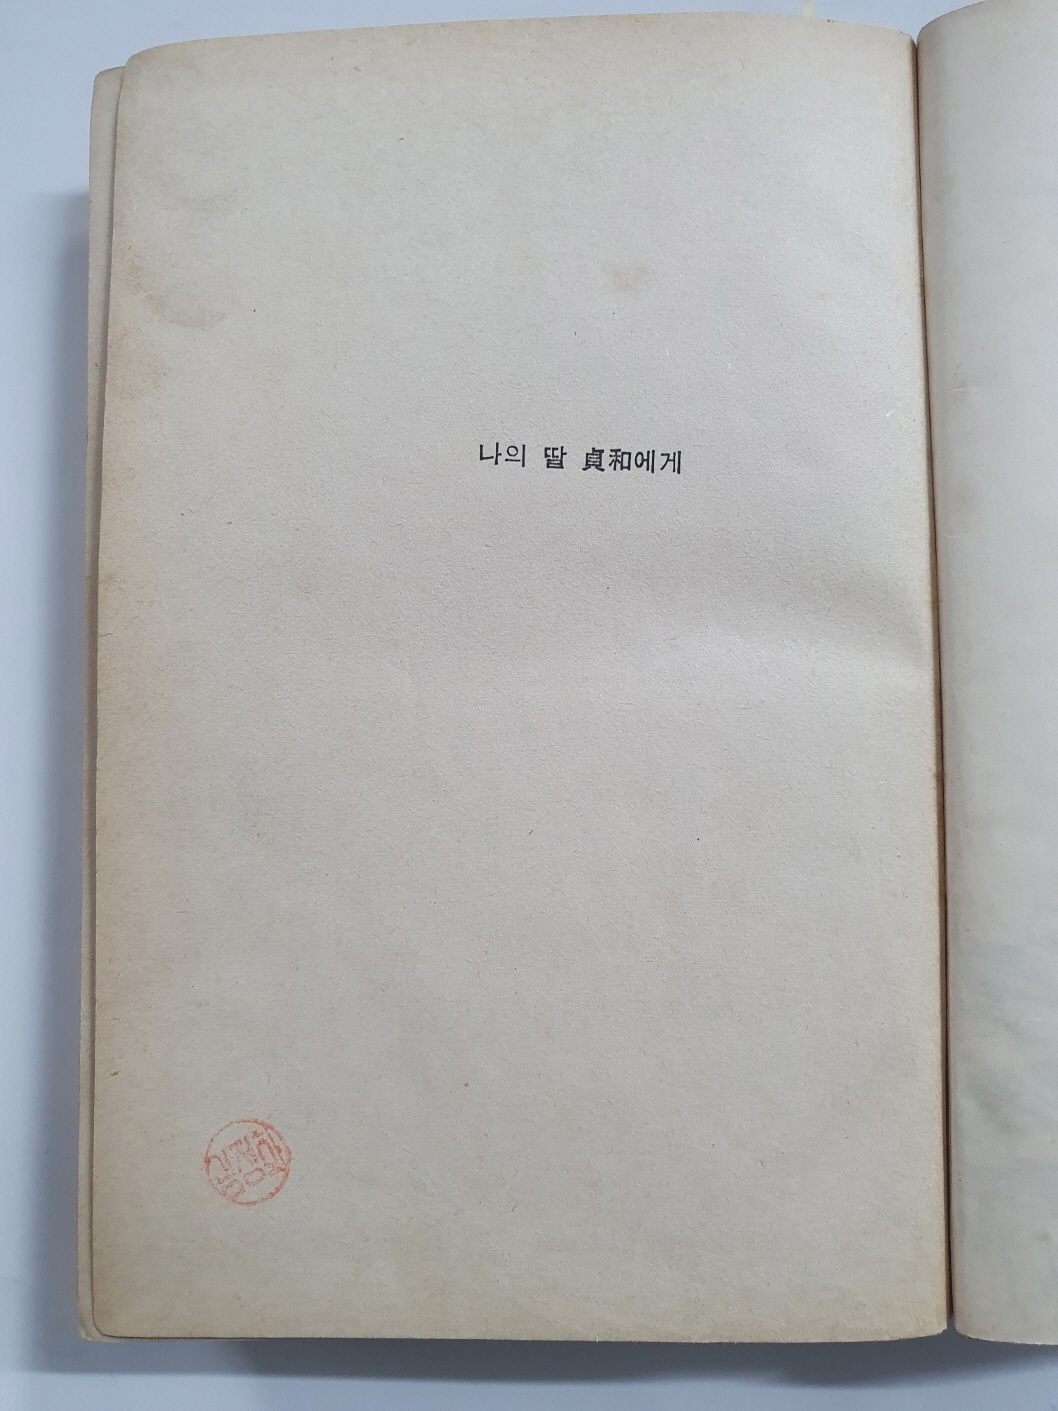 전혜린수필집 [그리고 아무말도 하지 않았다] 1966년 초판, 김정화(金貞和)소장본